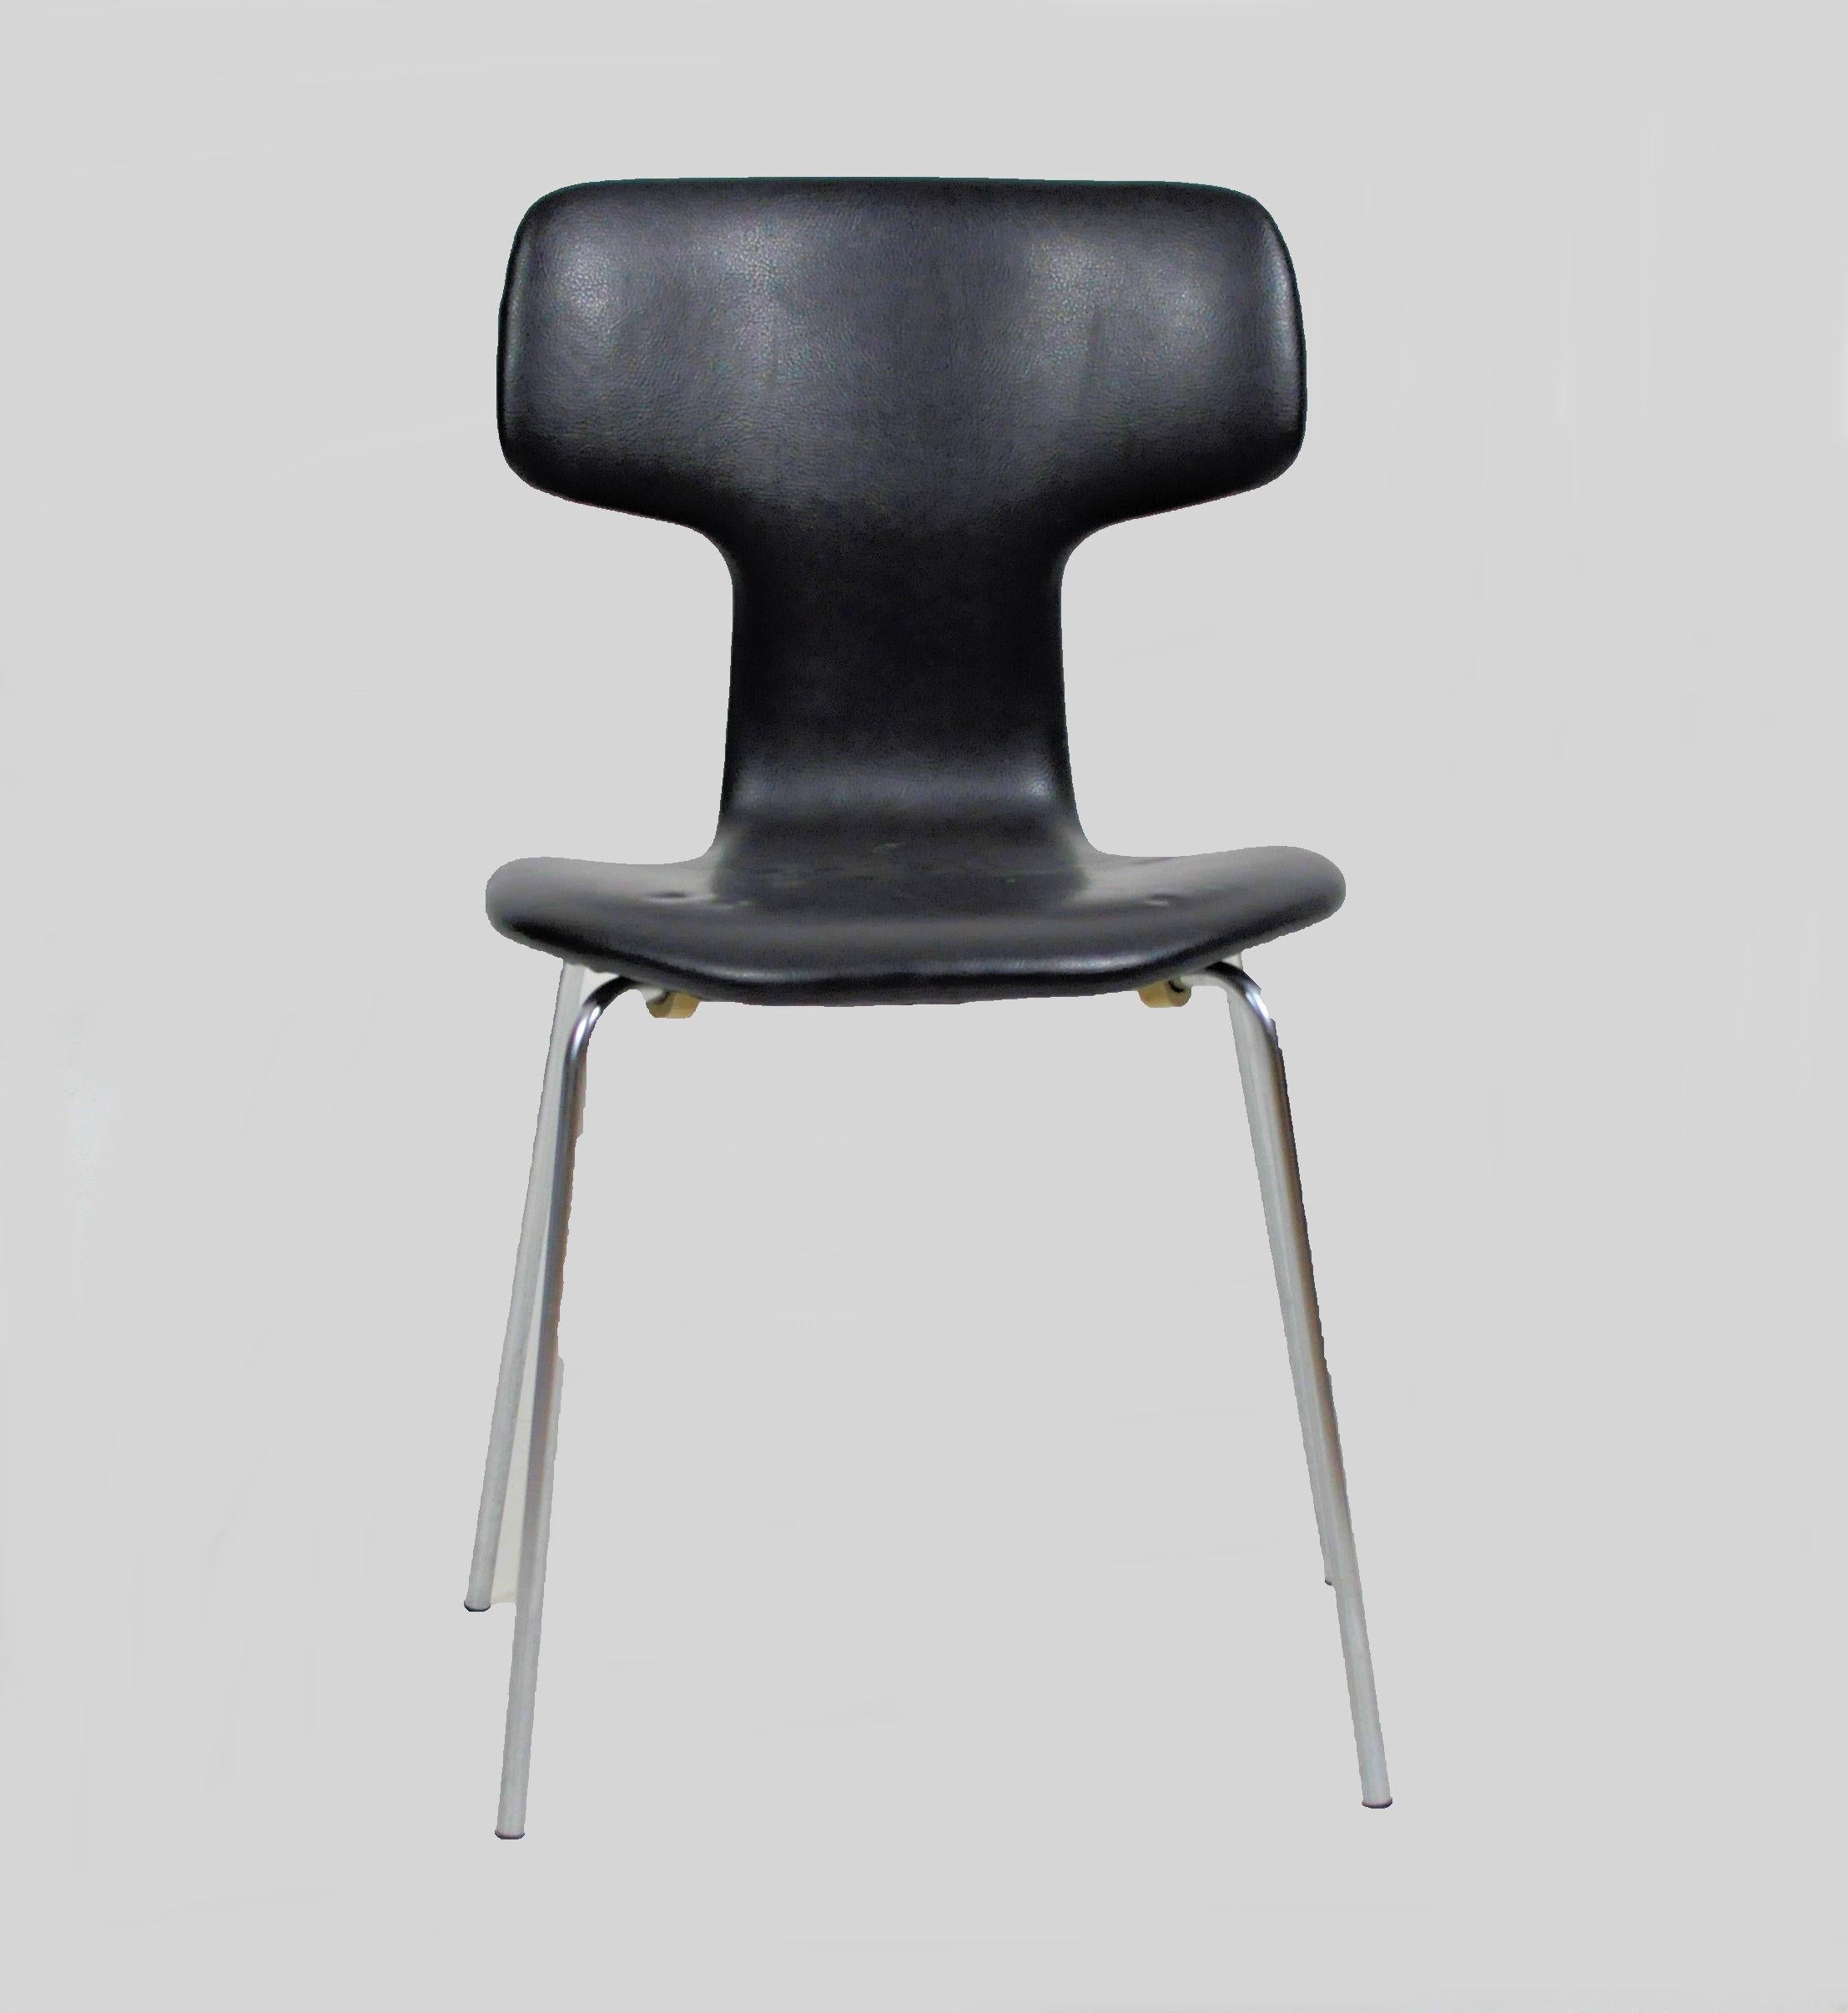 1960s Arne Jacobsen Set of Six T Chairs or Hammer Chairs by Fritz Hansen

Ensemble de six chaises danoises vintage, modèle 3103 d'Arne Jacobsen, appelées 